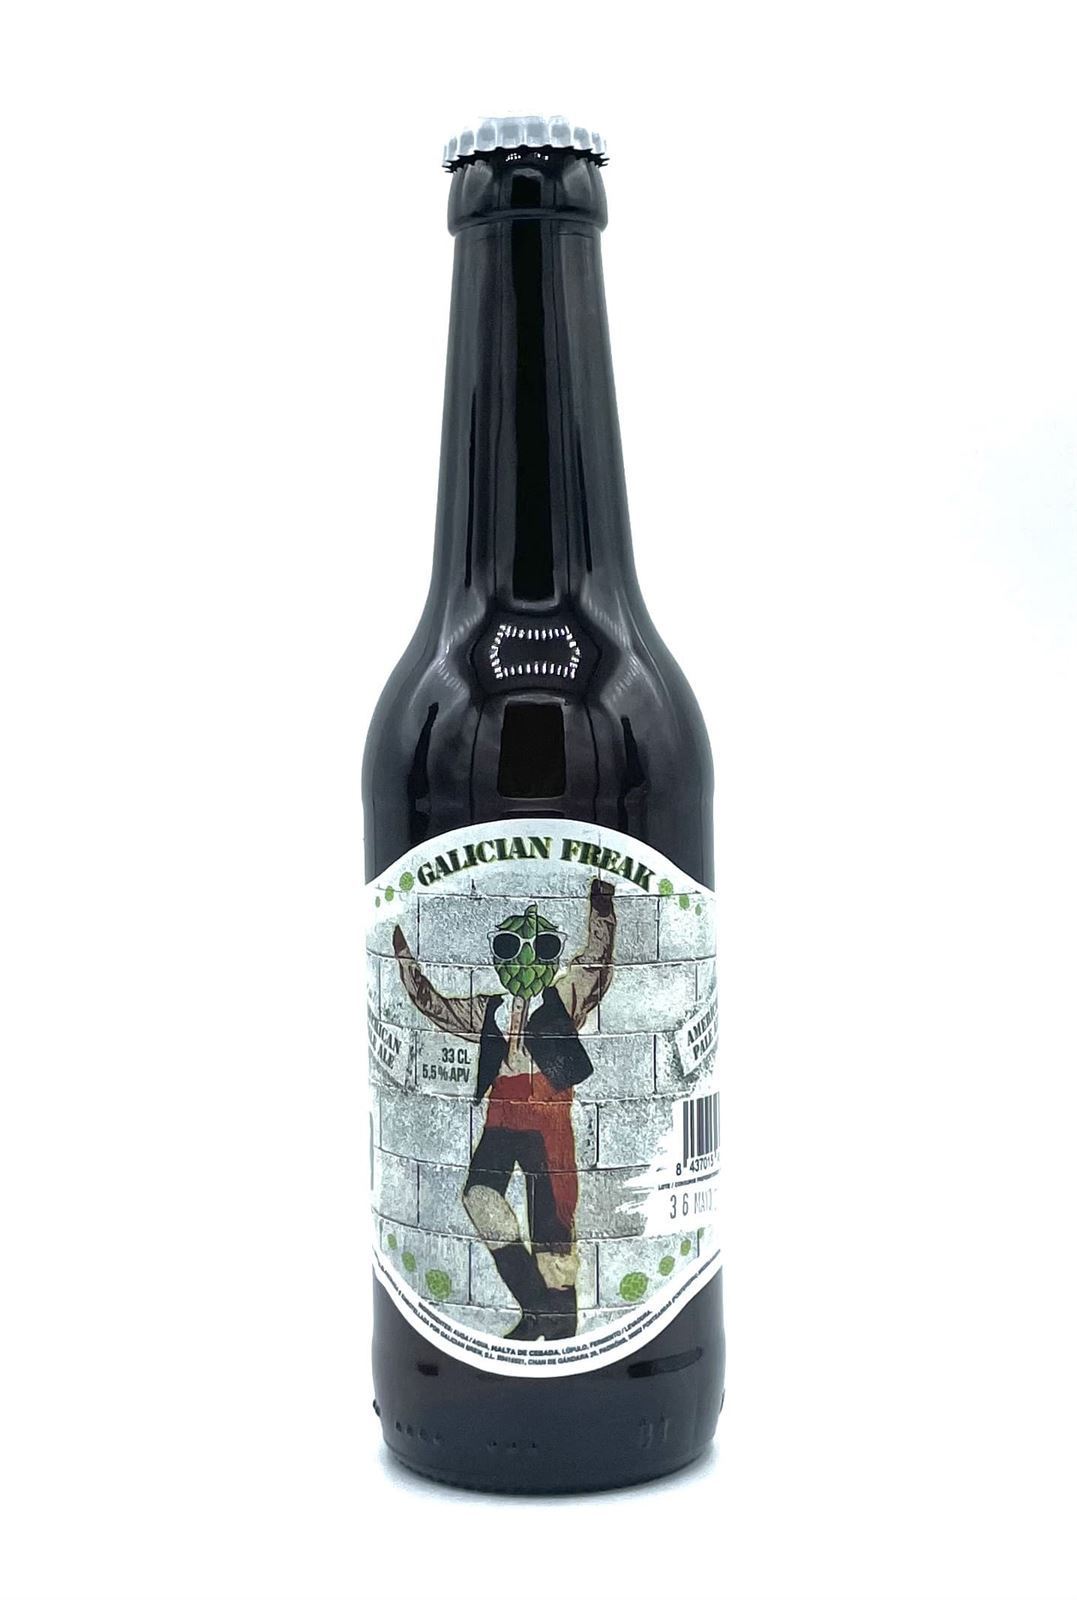 Cerveza Galician Freak American Pale Ale 330ml - Imagen 1